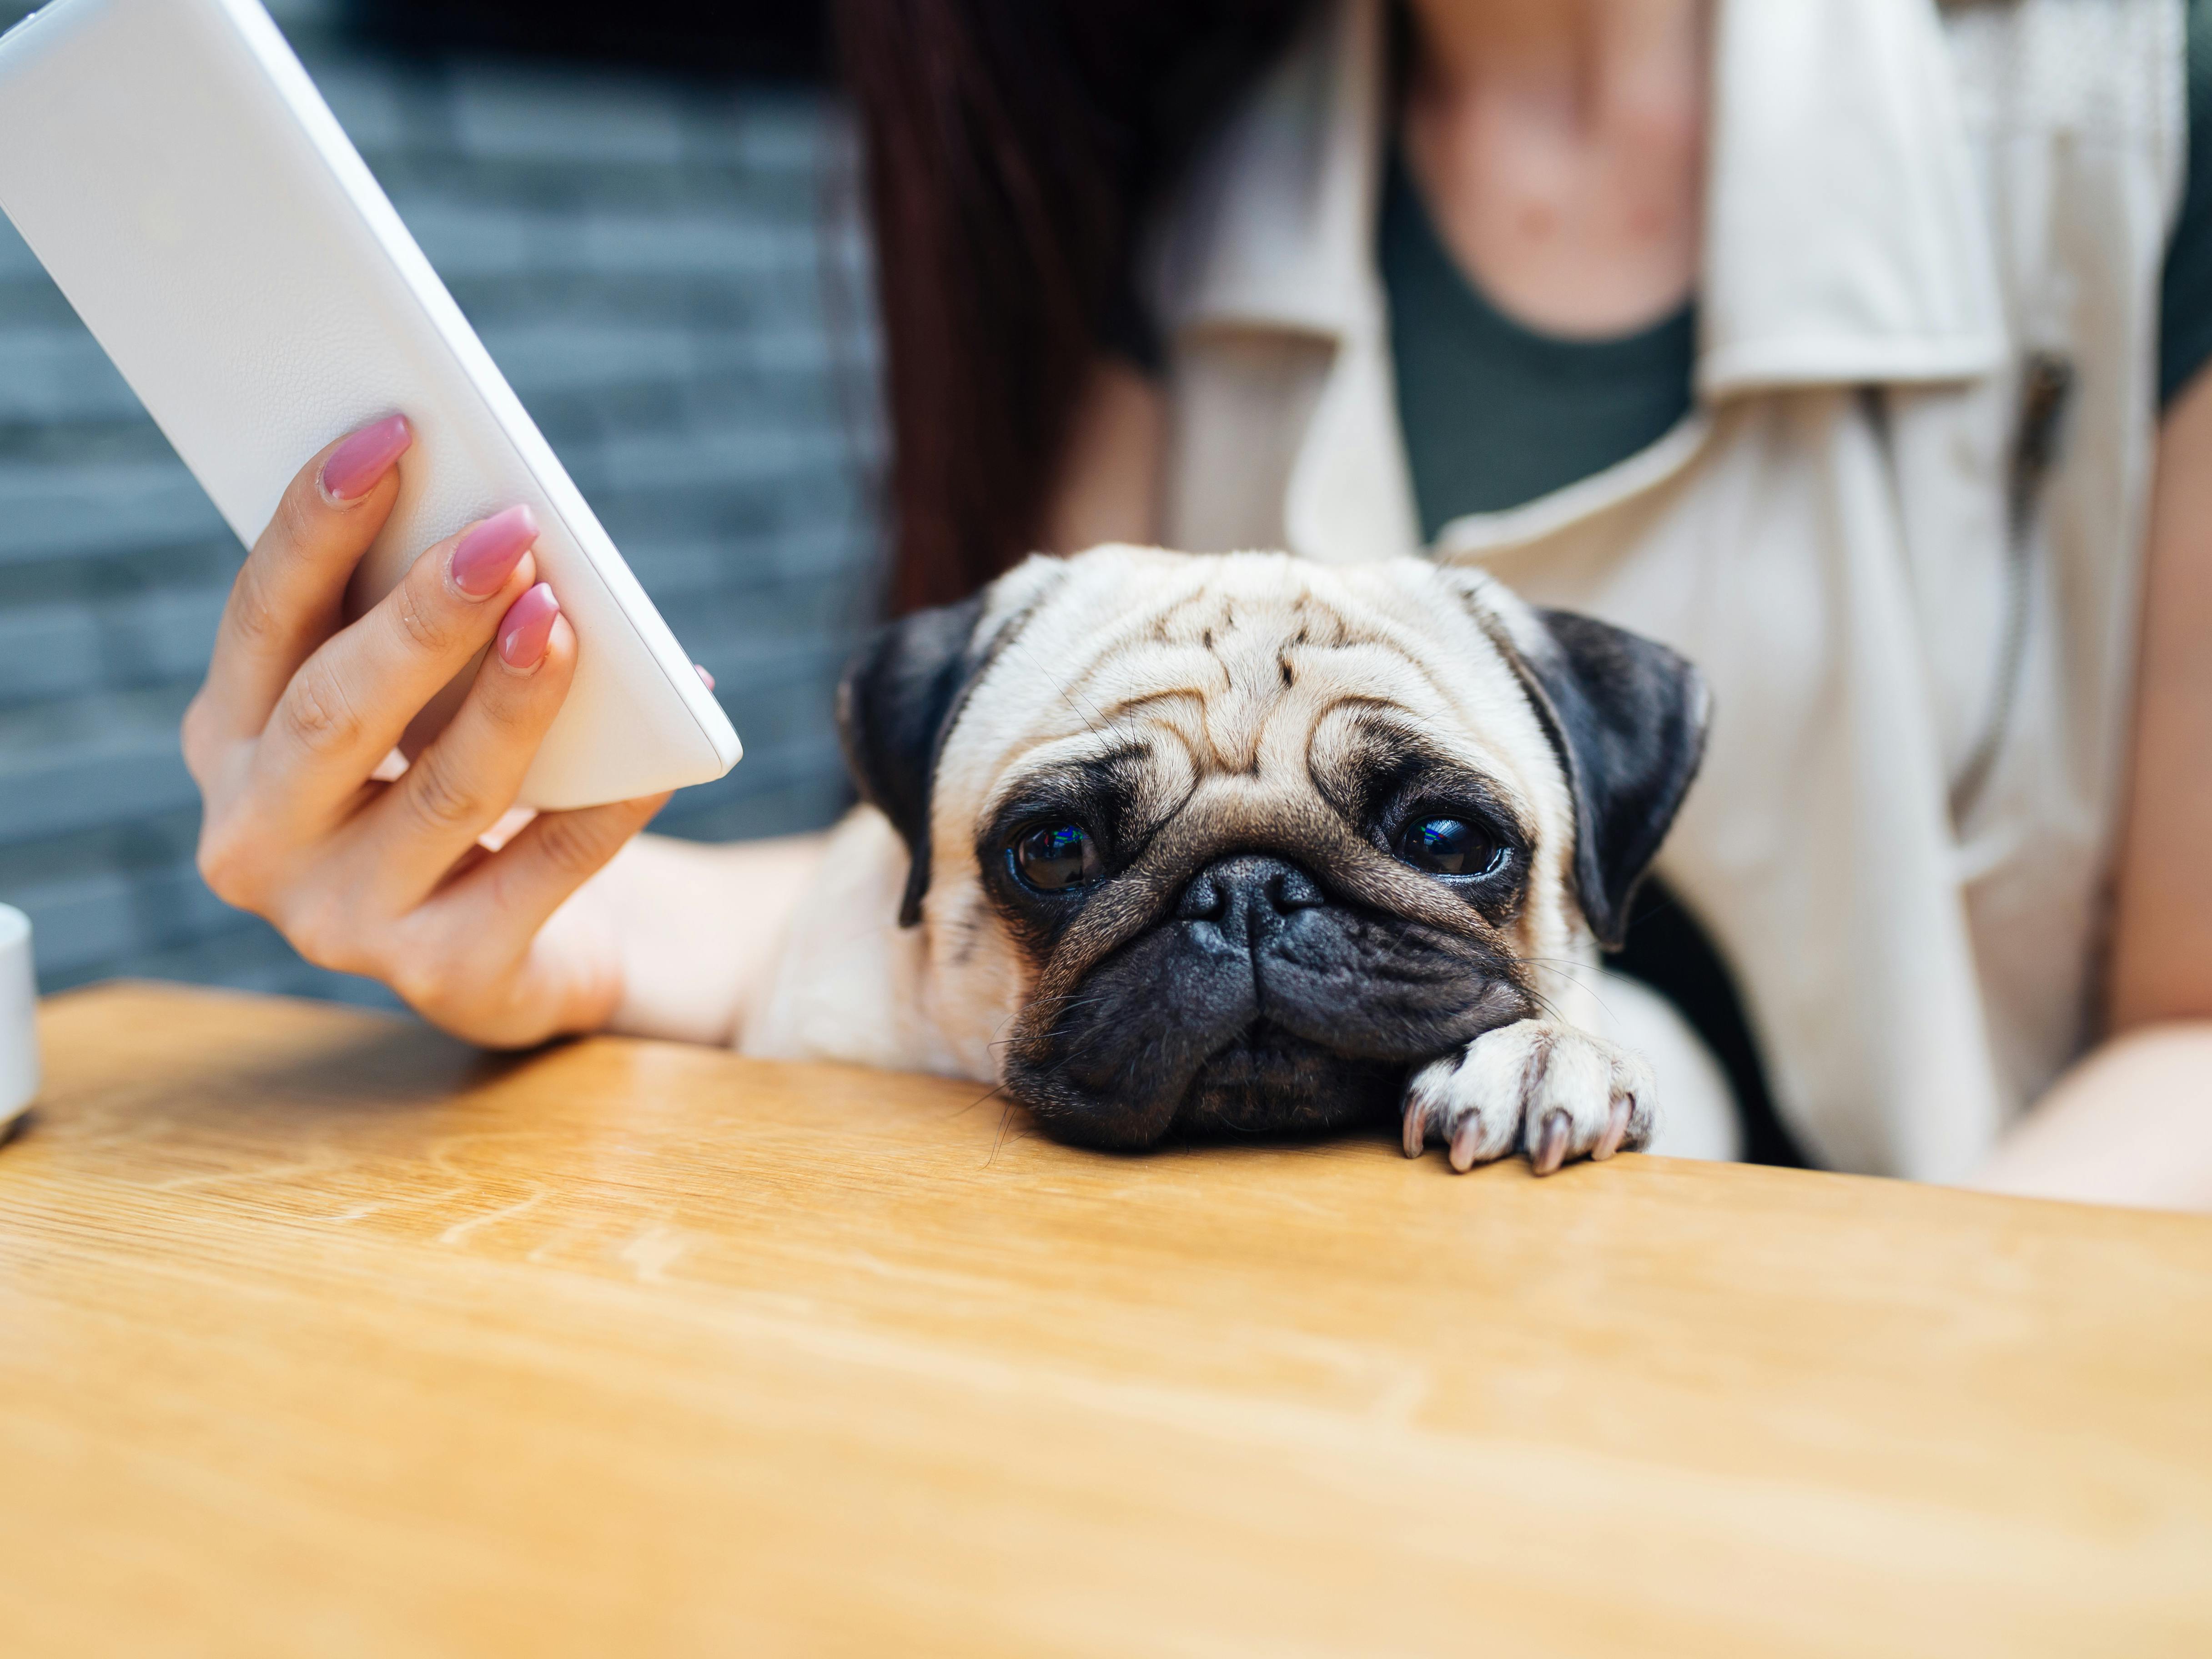 Læser til Puk: Hunde reagerer også på mobiltelefoner